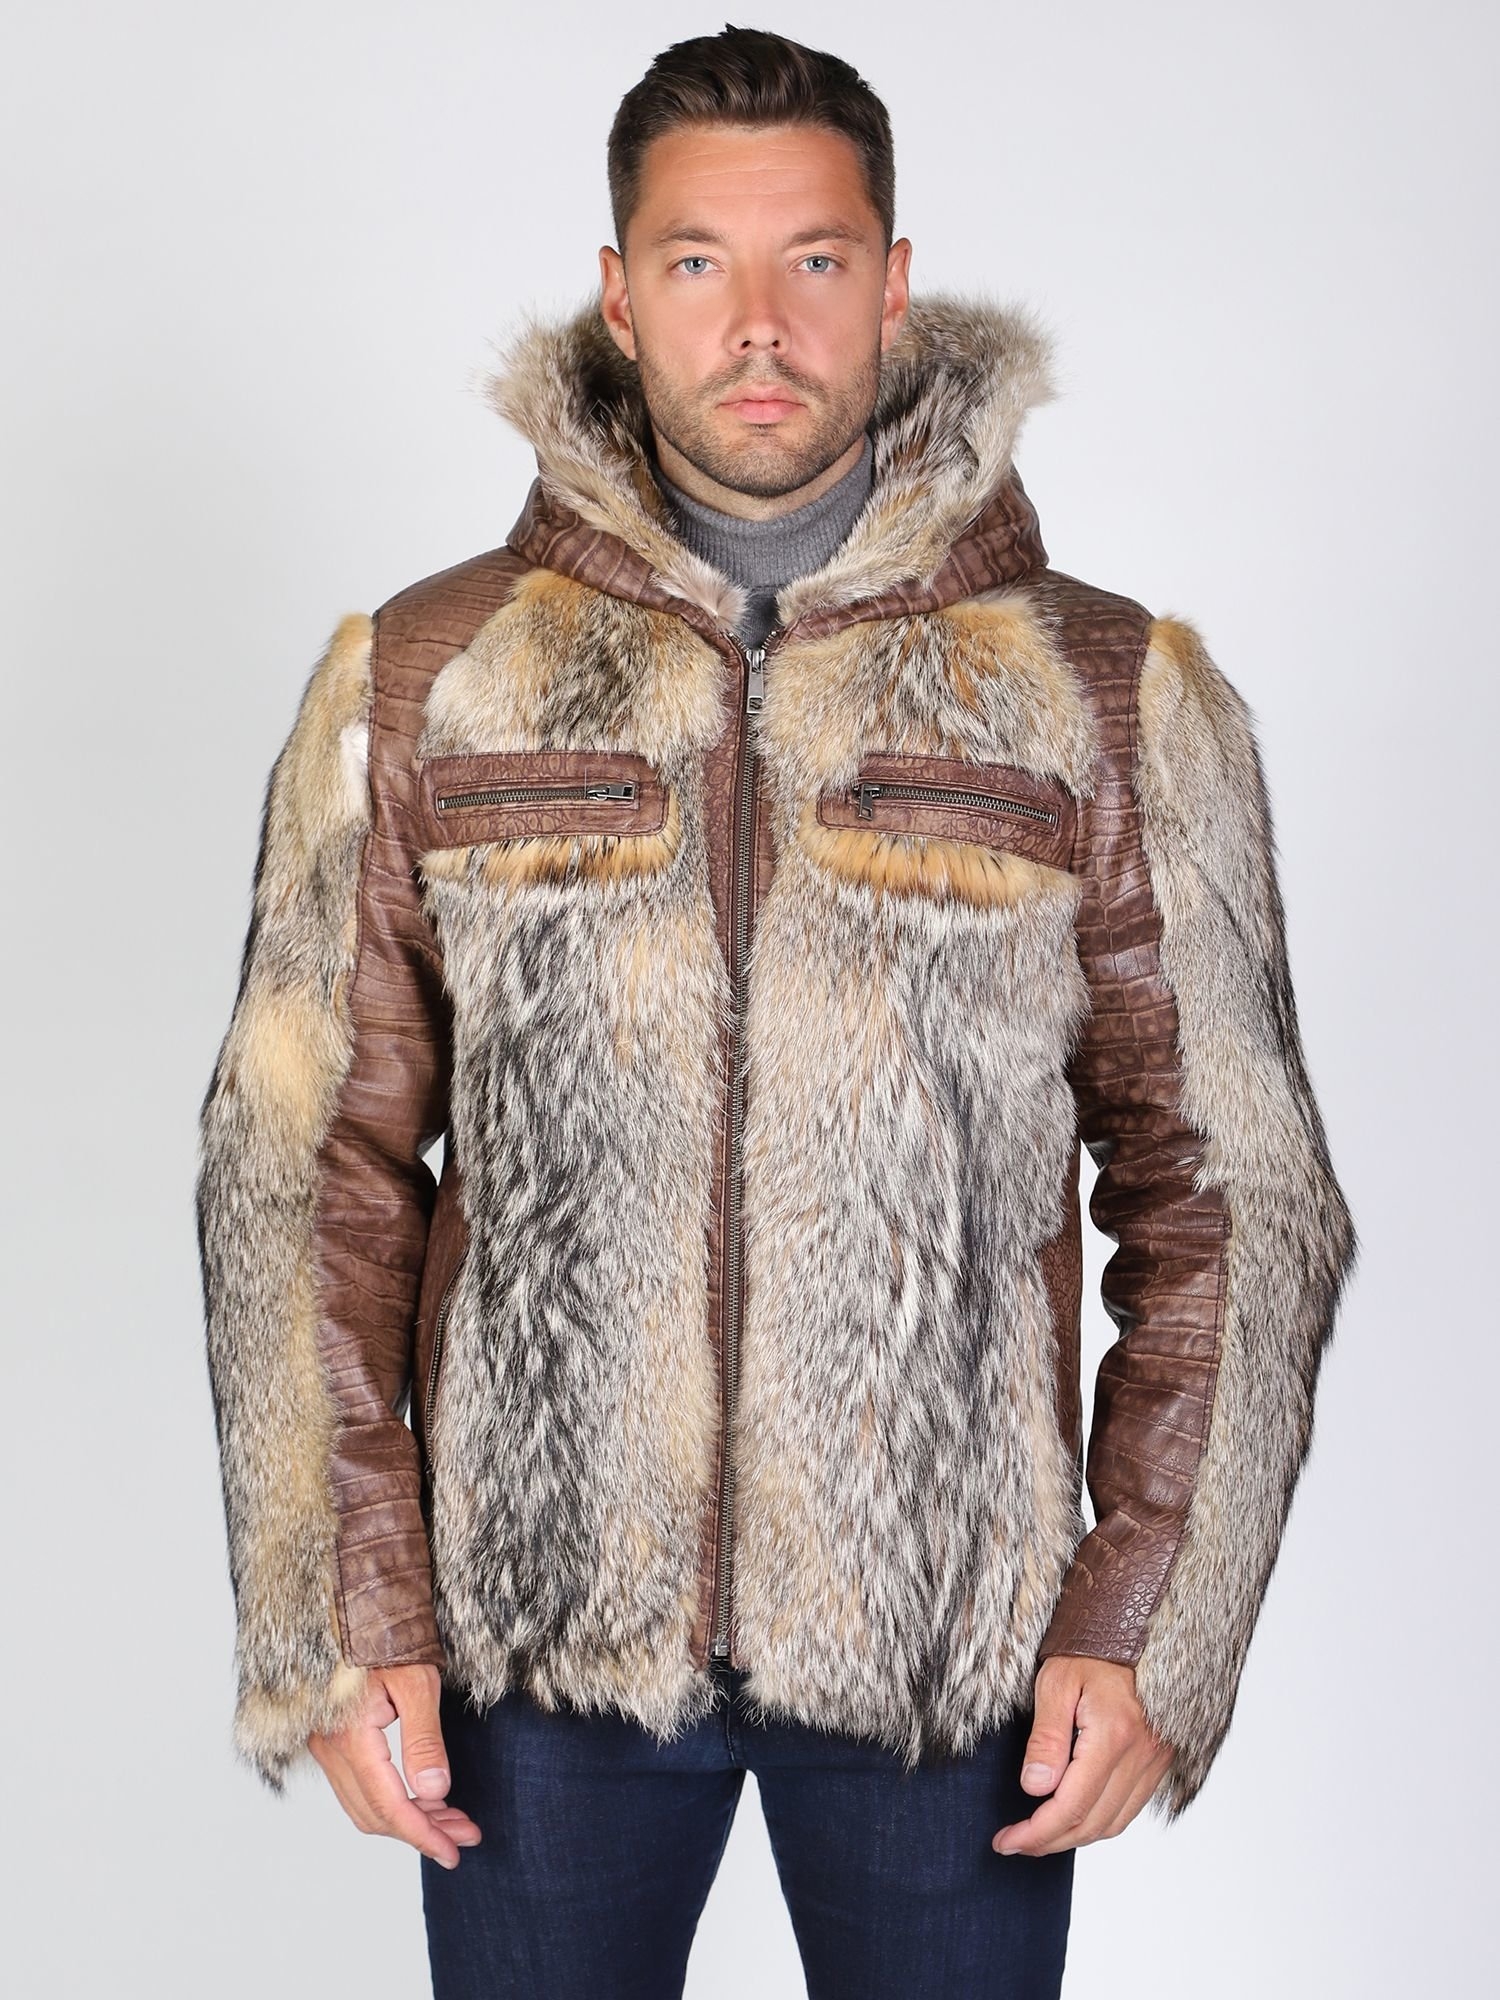 Куртка волки мужская. Куртка Херман кожаная с мехом волка. Куртка из волка мужская. Куртка с волчьим мехом мужская. Куртка с мехом волка мужская.